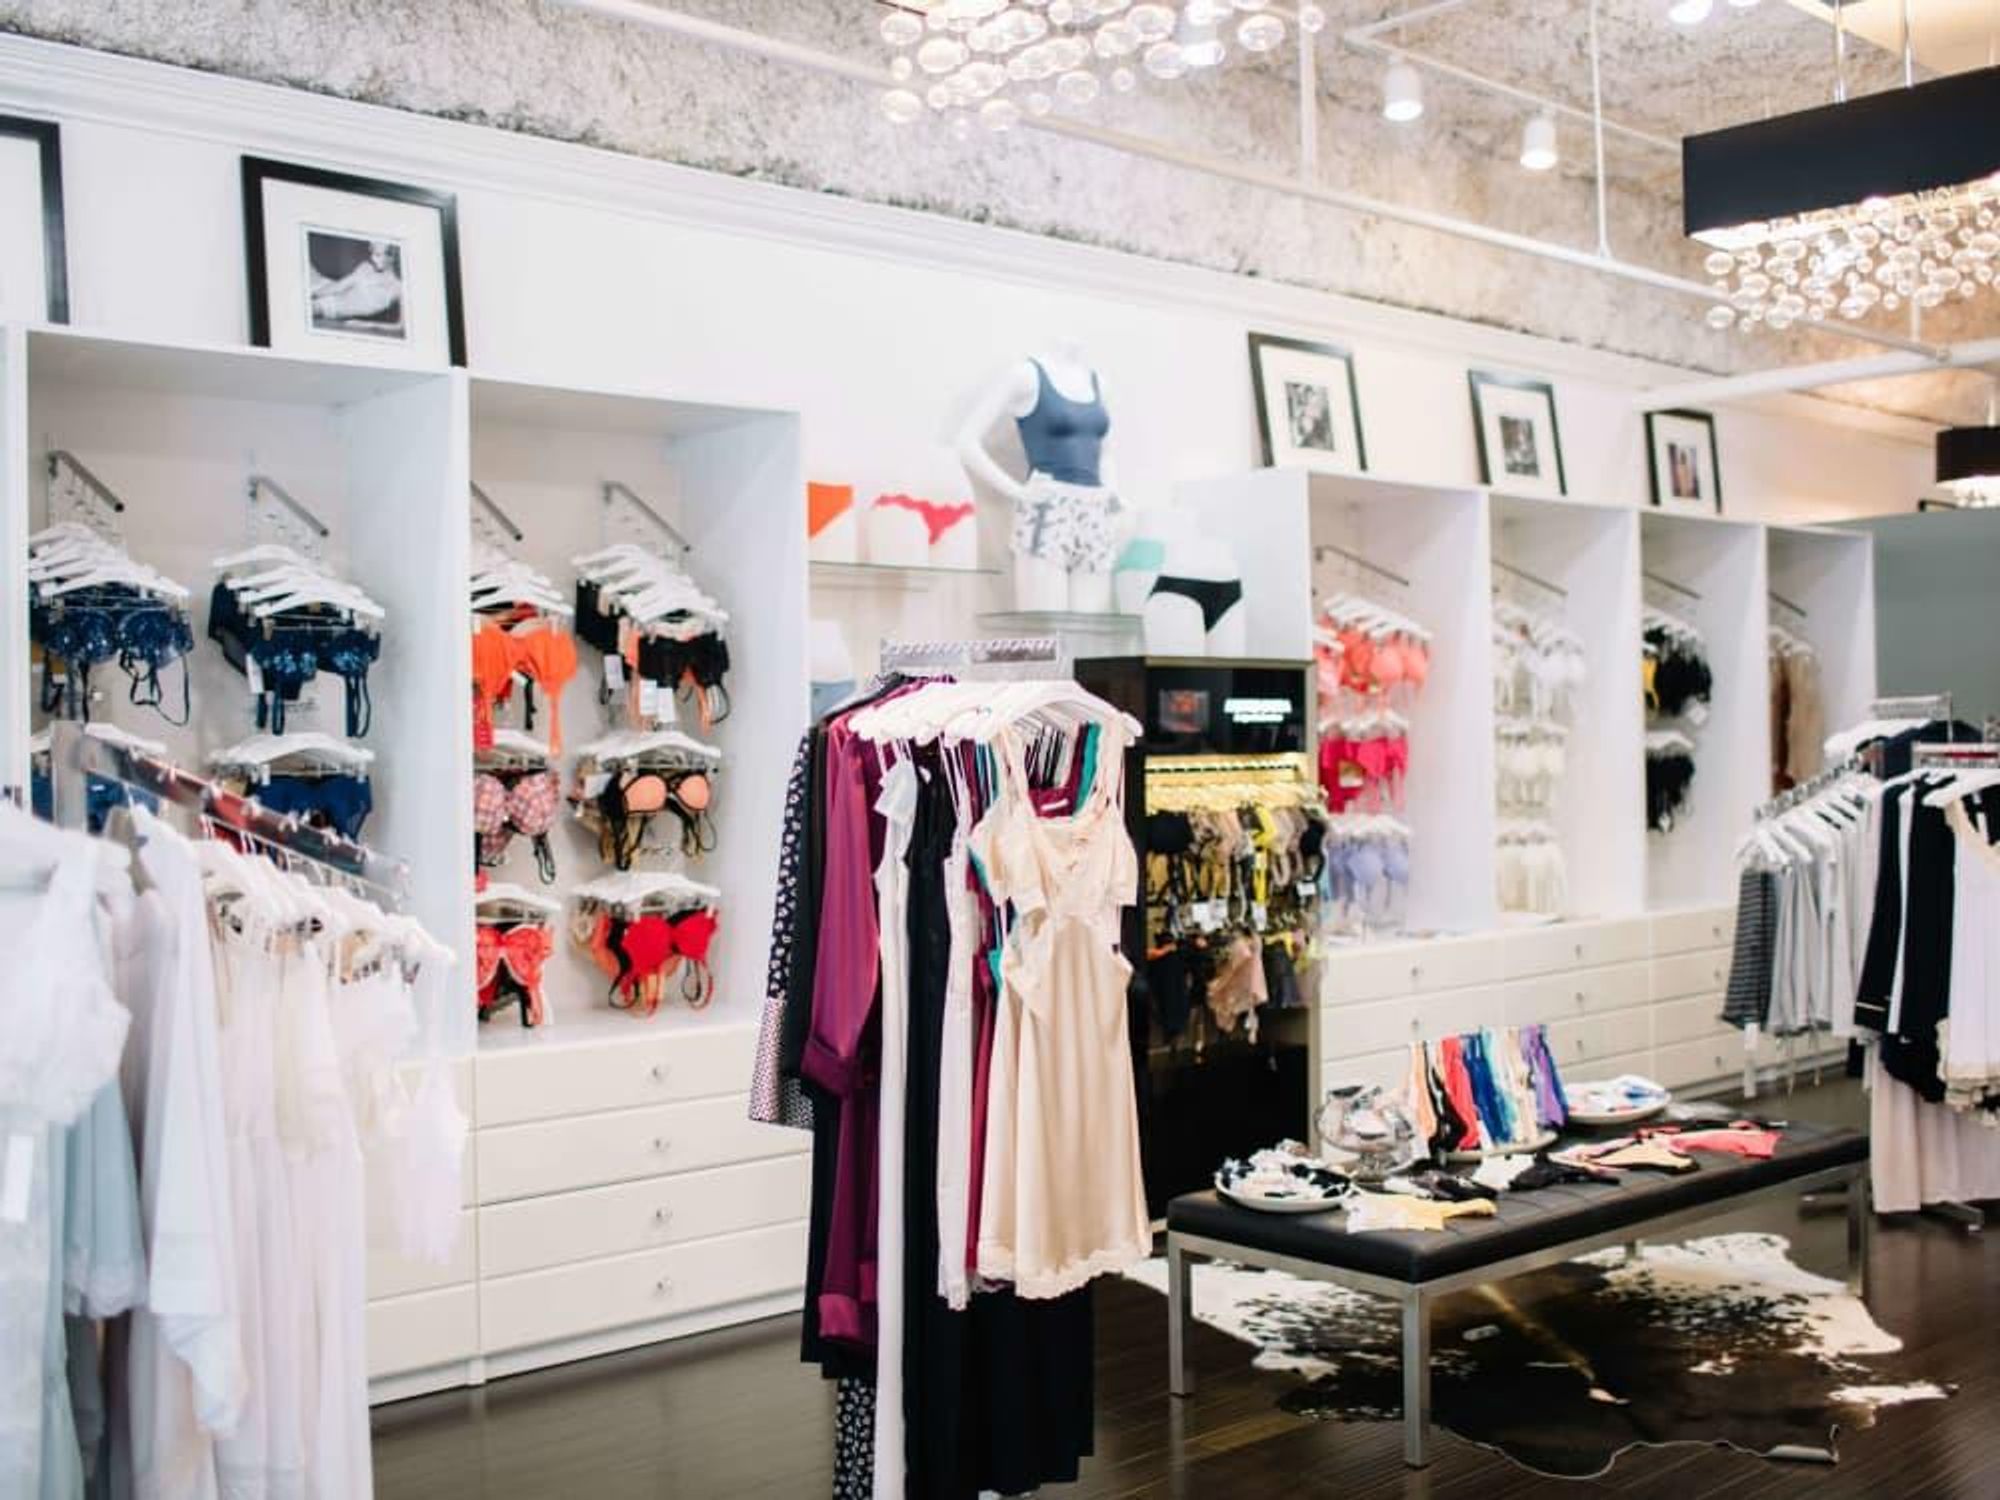 Popular Austin lingerie shop reveals sexy new location - CultureMap Austin